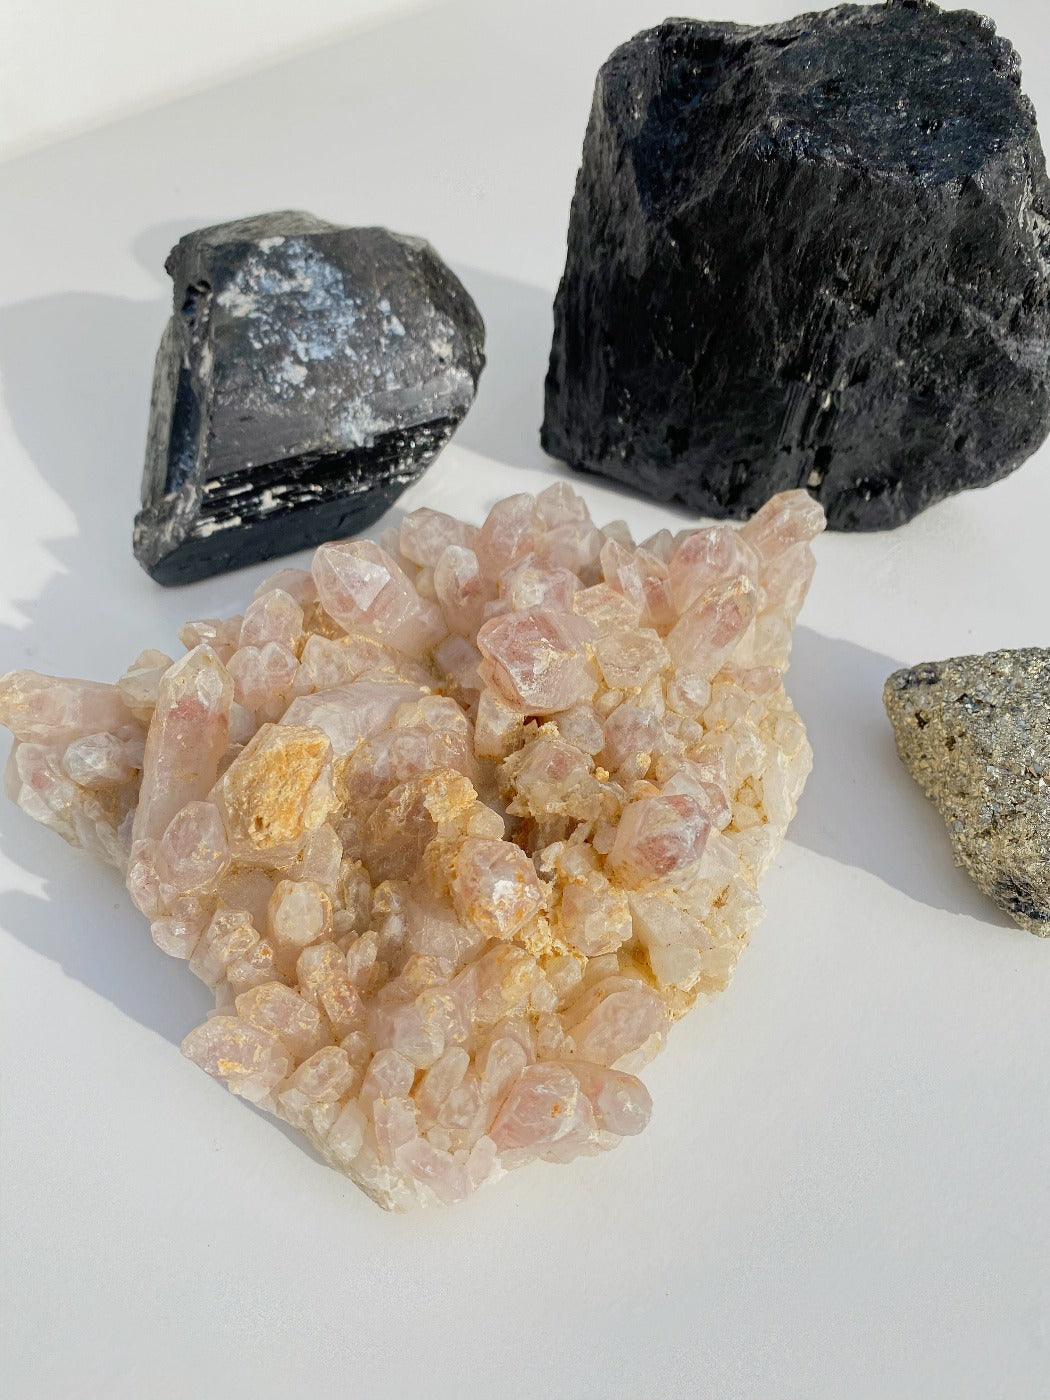 black tourmaline and strawberry quartz large crystals as home decor